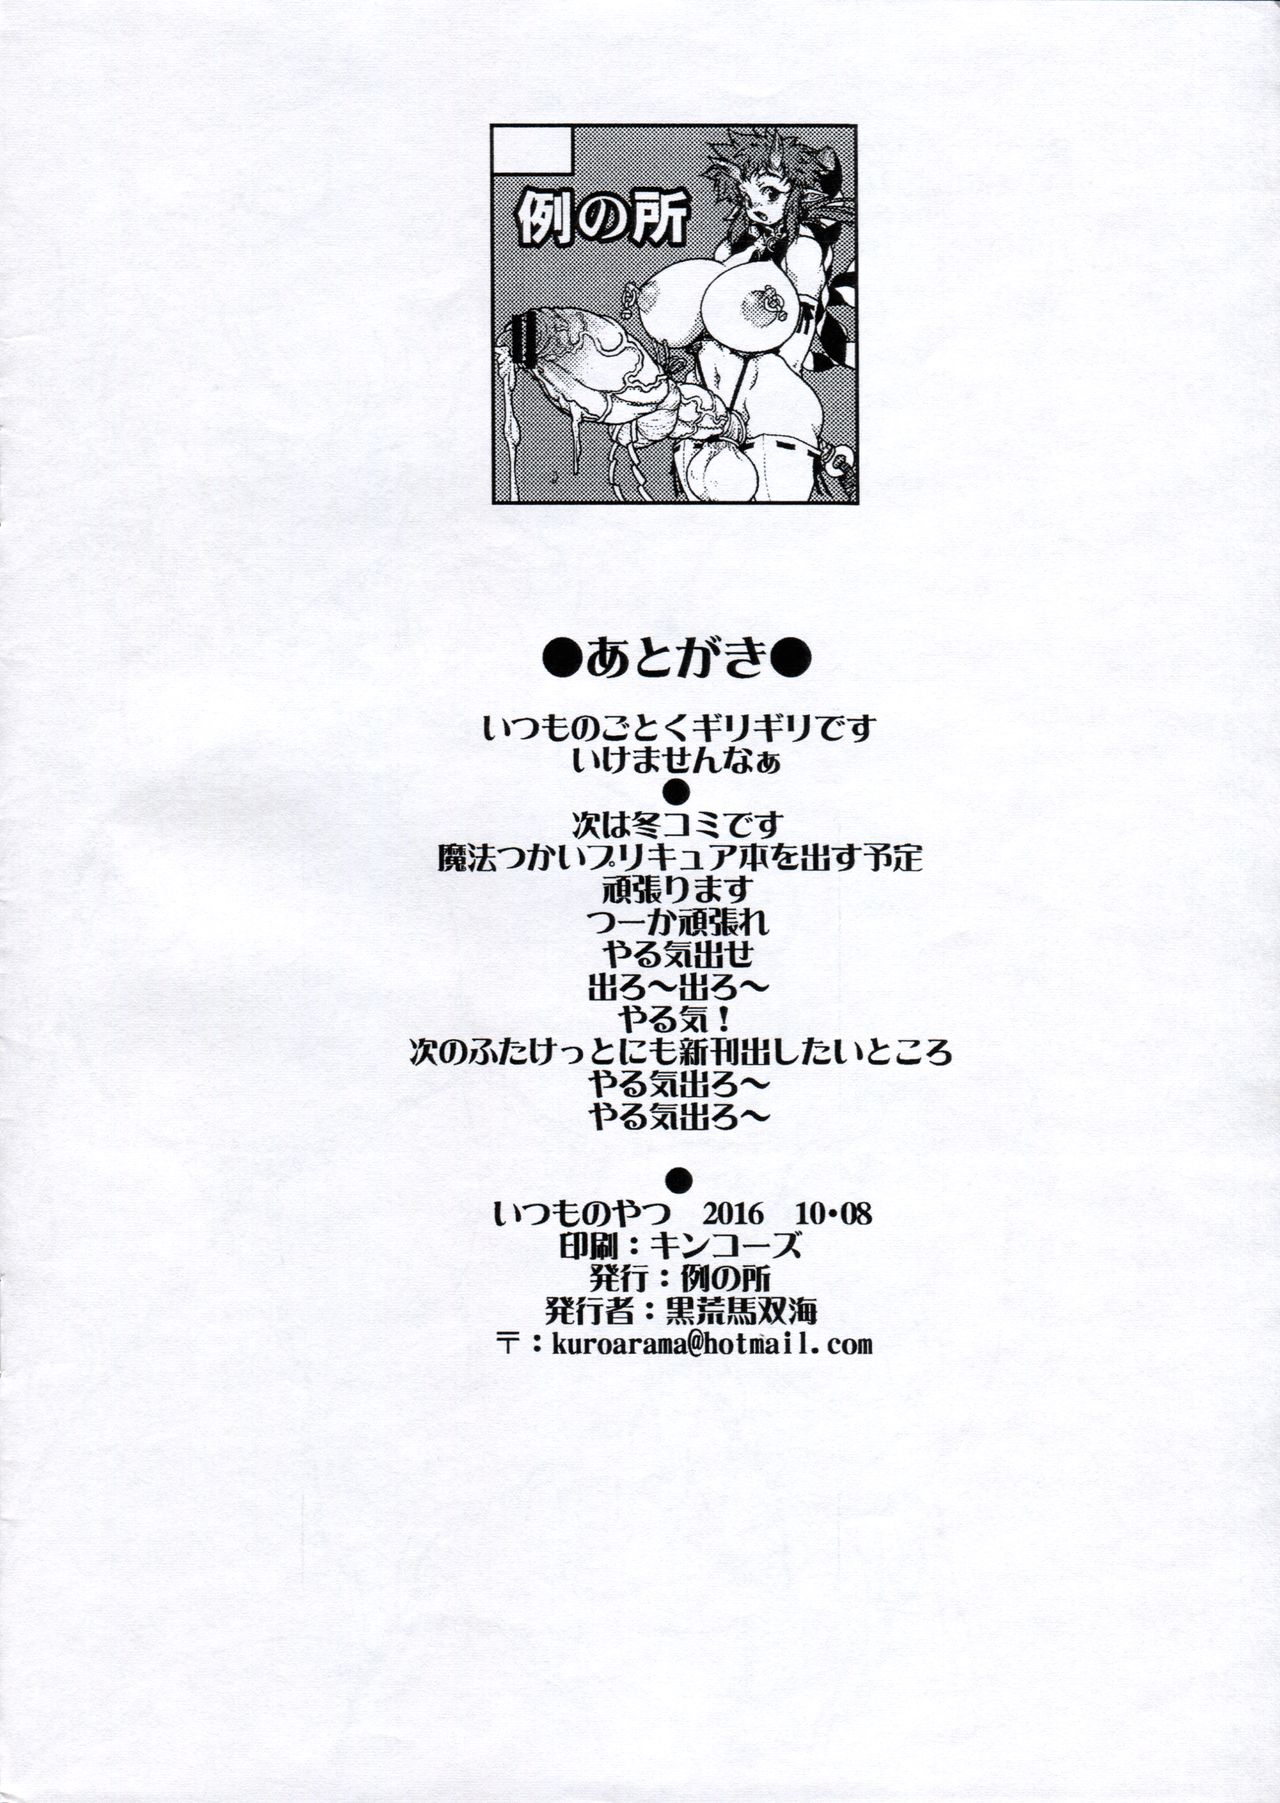 (Futaket 12.5) [Rei no Tokoro (Kuroarama Soukai)] Itsumo no Yatsu 2016-10-08 page 9 full